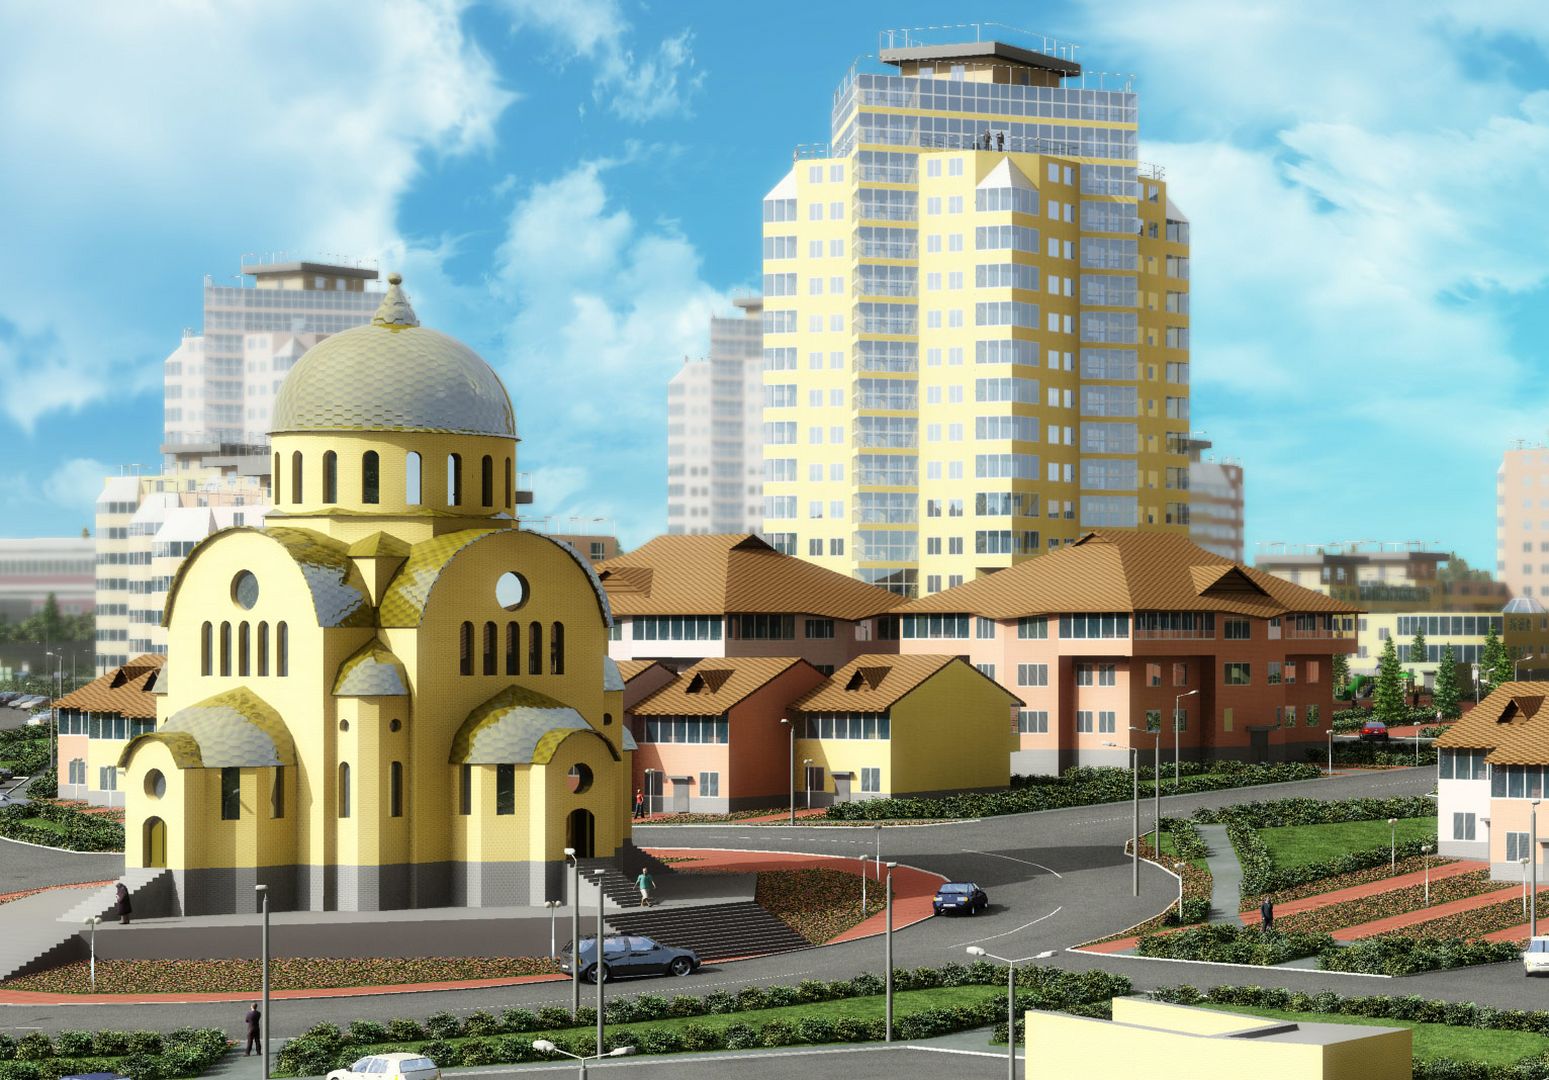 Город киров фото города 2022